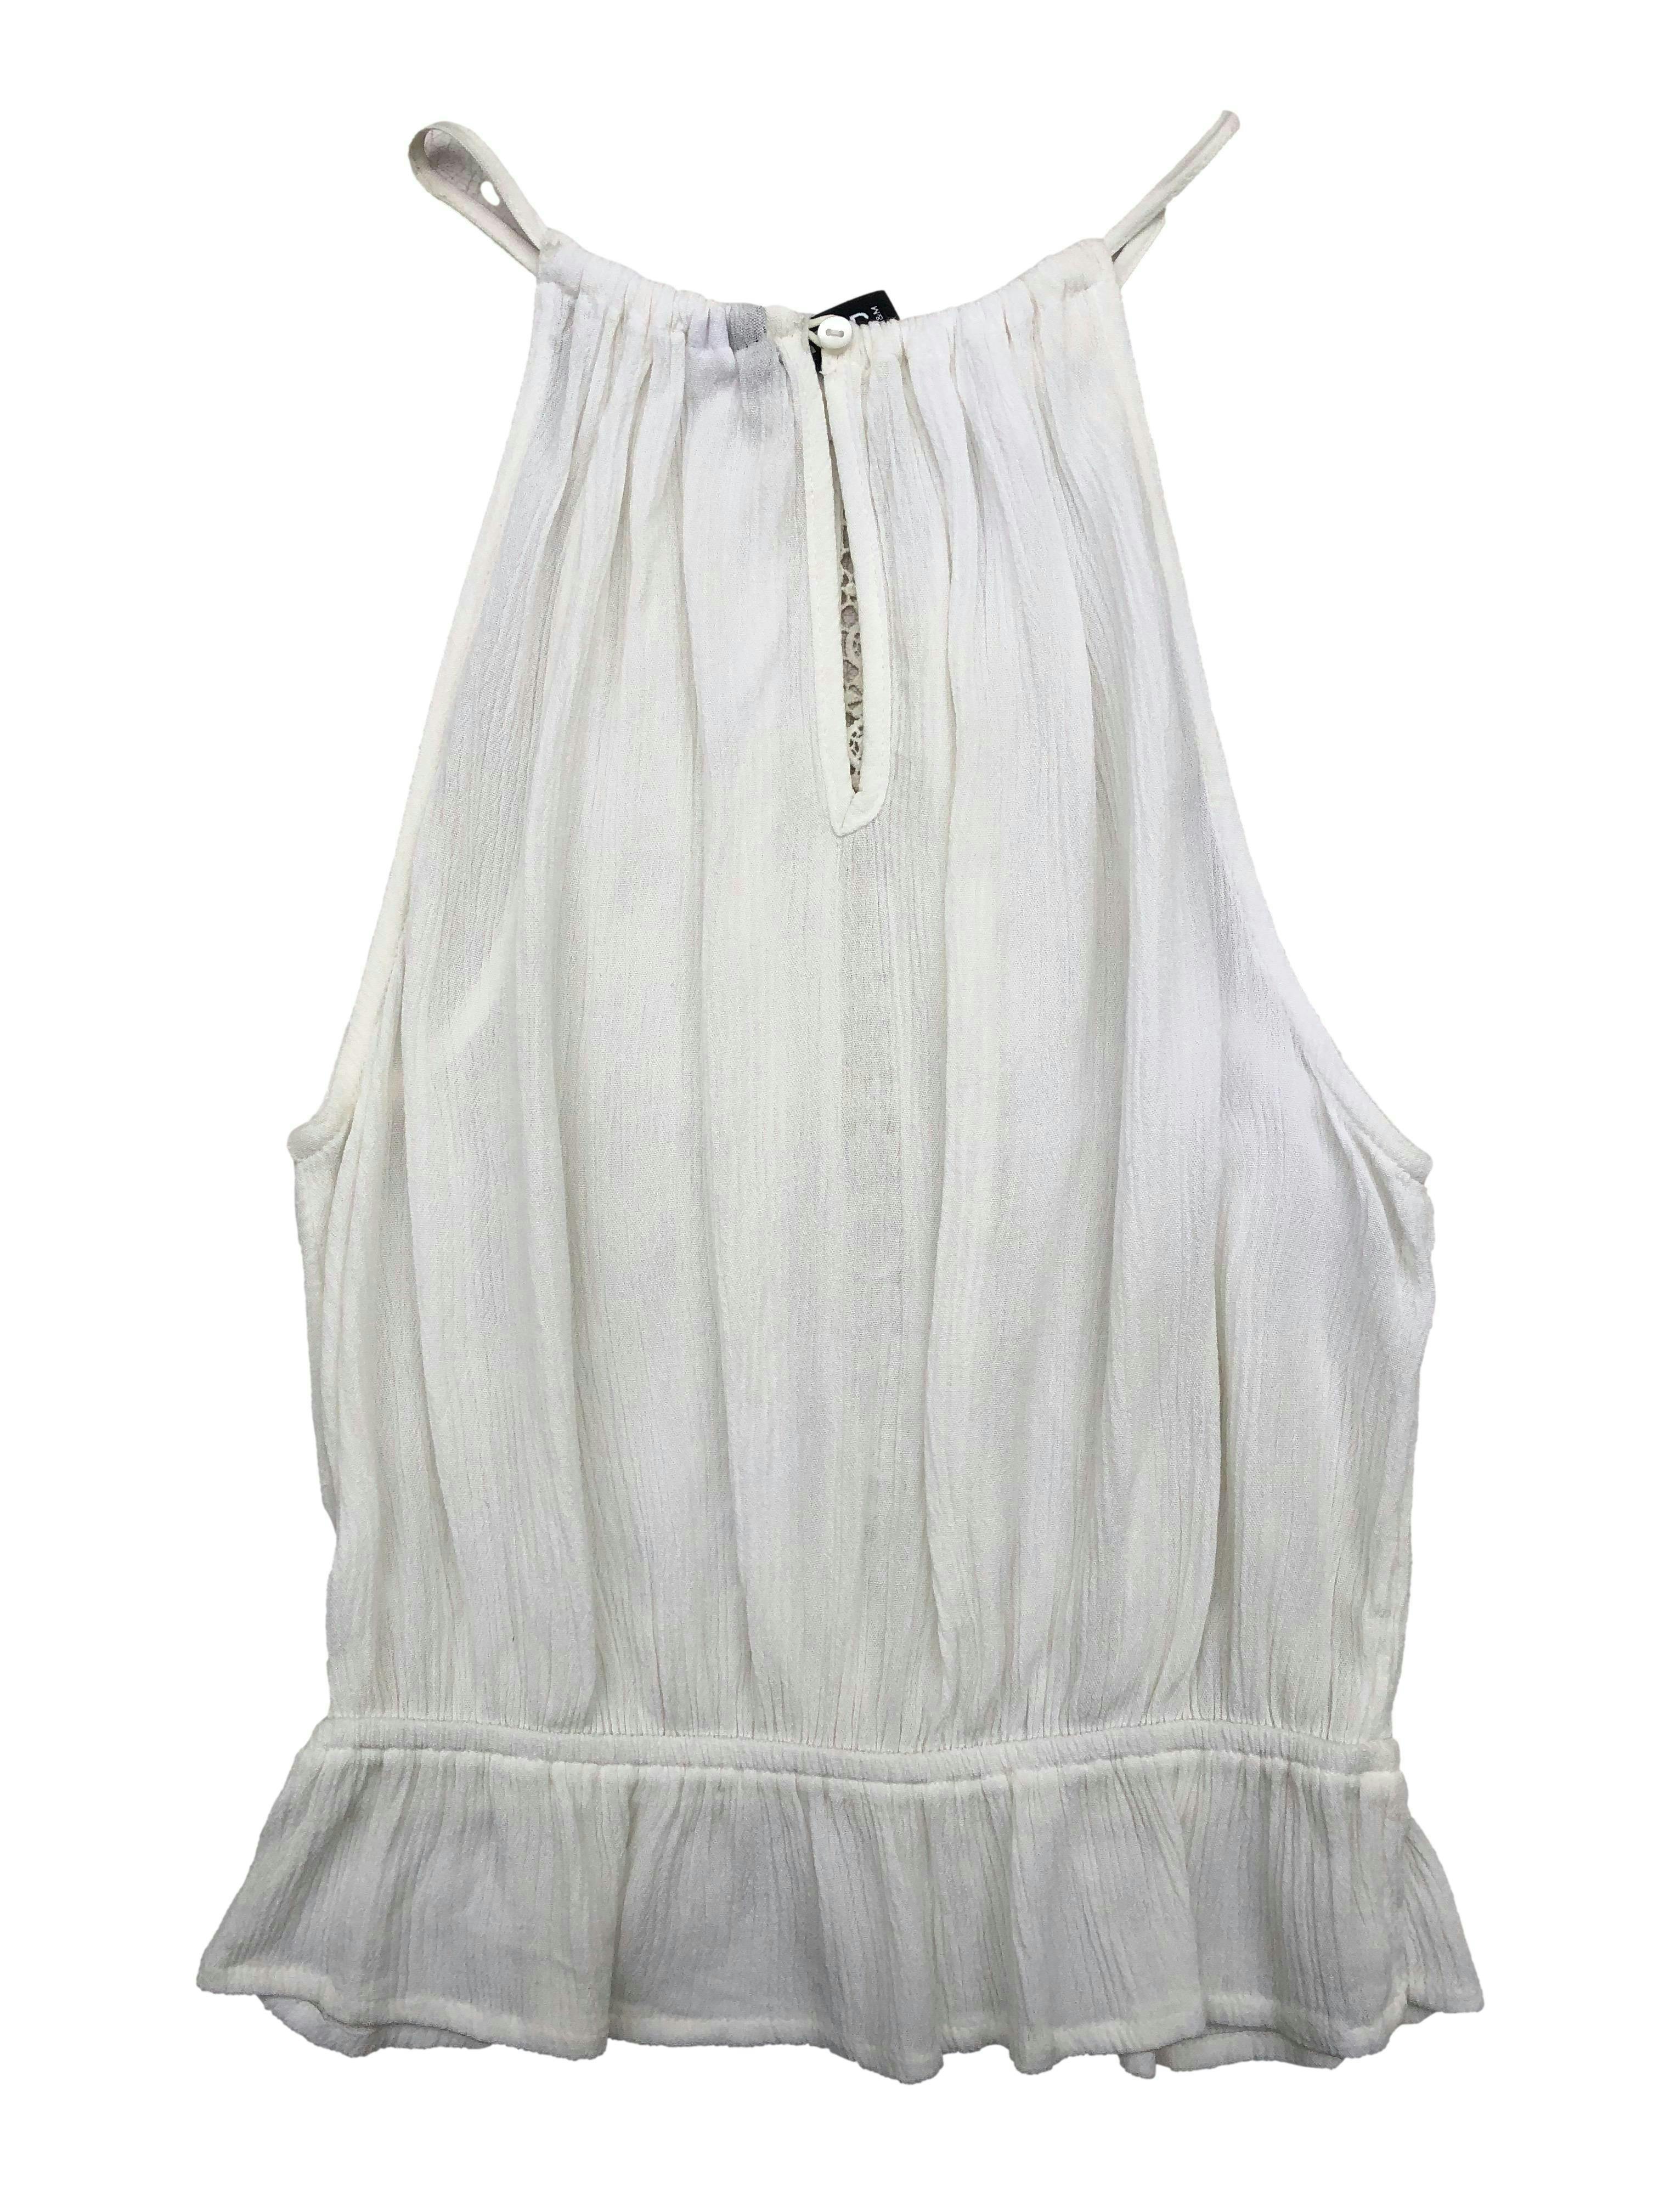 Blusa H&M de crepé blanco, cuello halter, encaje en centro, cintura elástica y botón en espalda. Busto 80cm sin estirar. Largo 45cm.   